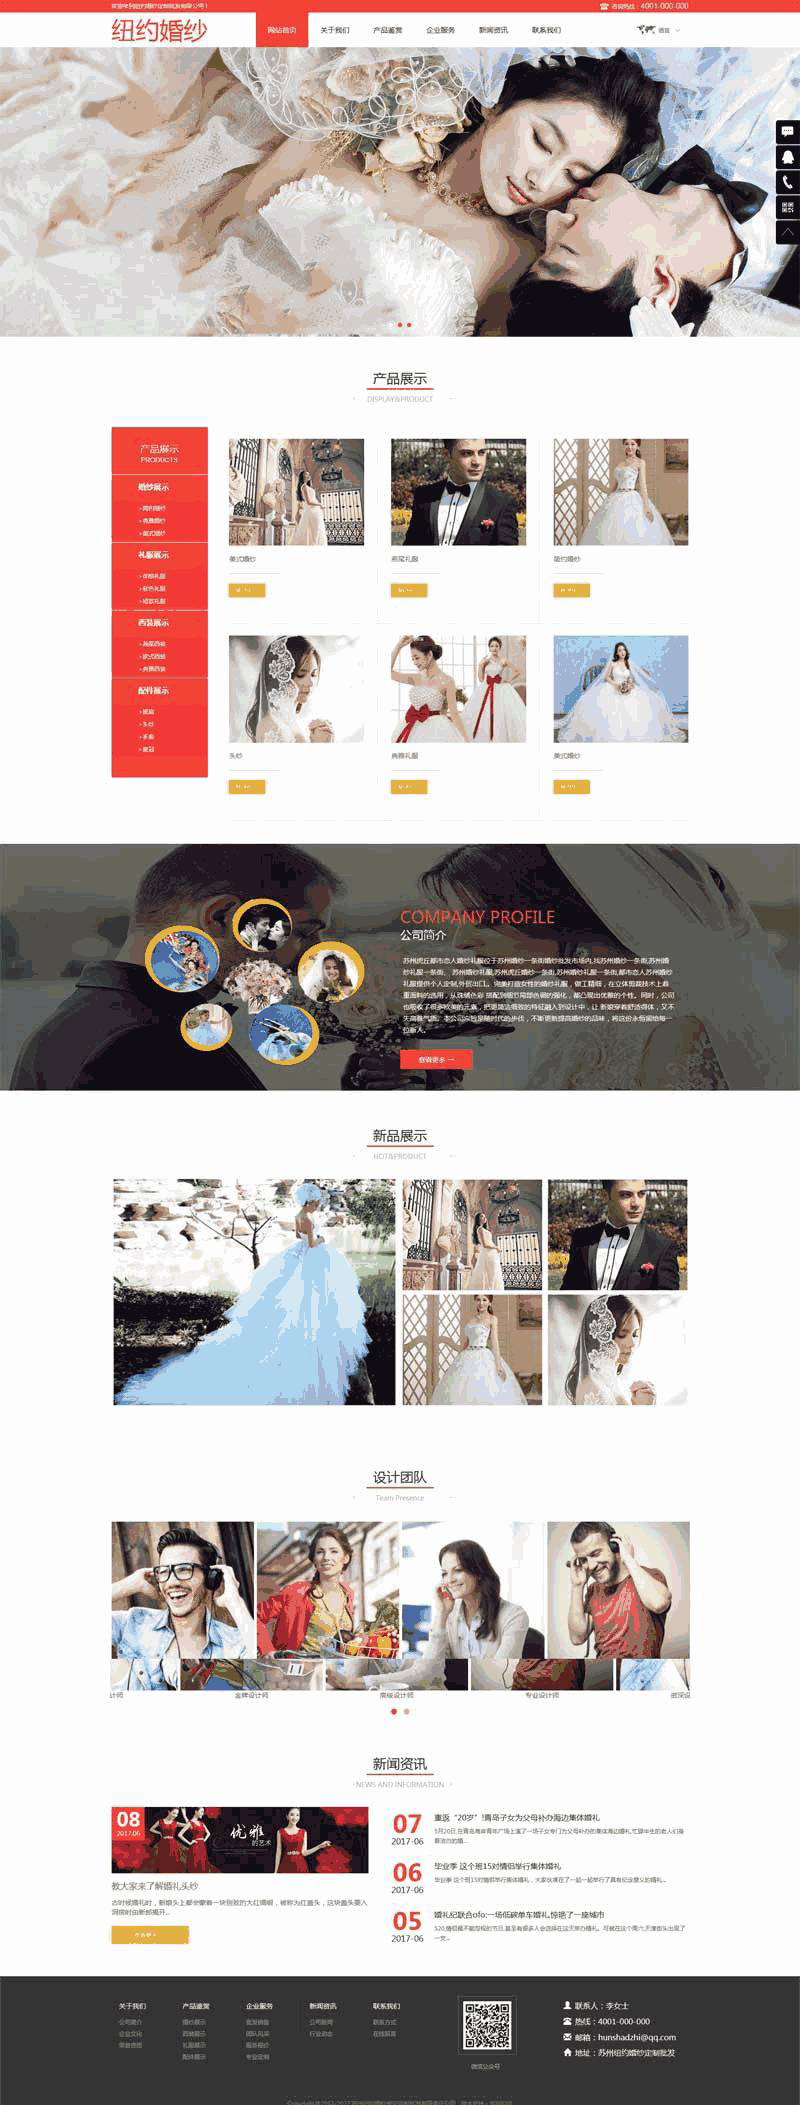 红色婚纱摄影公司WordPress模板主题演示图